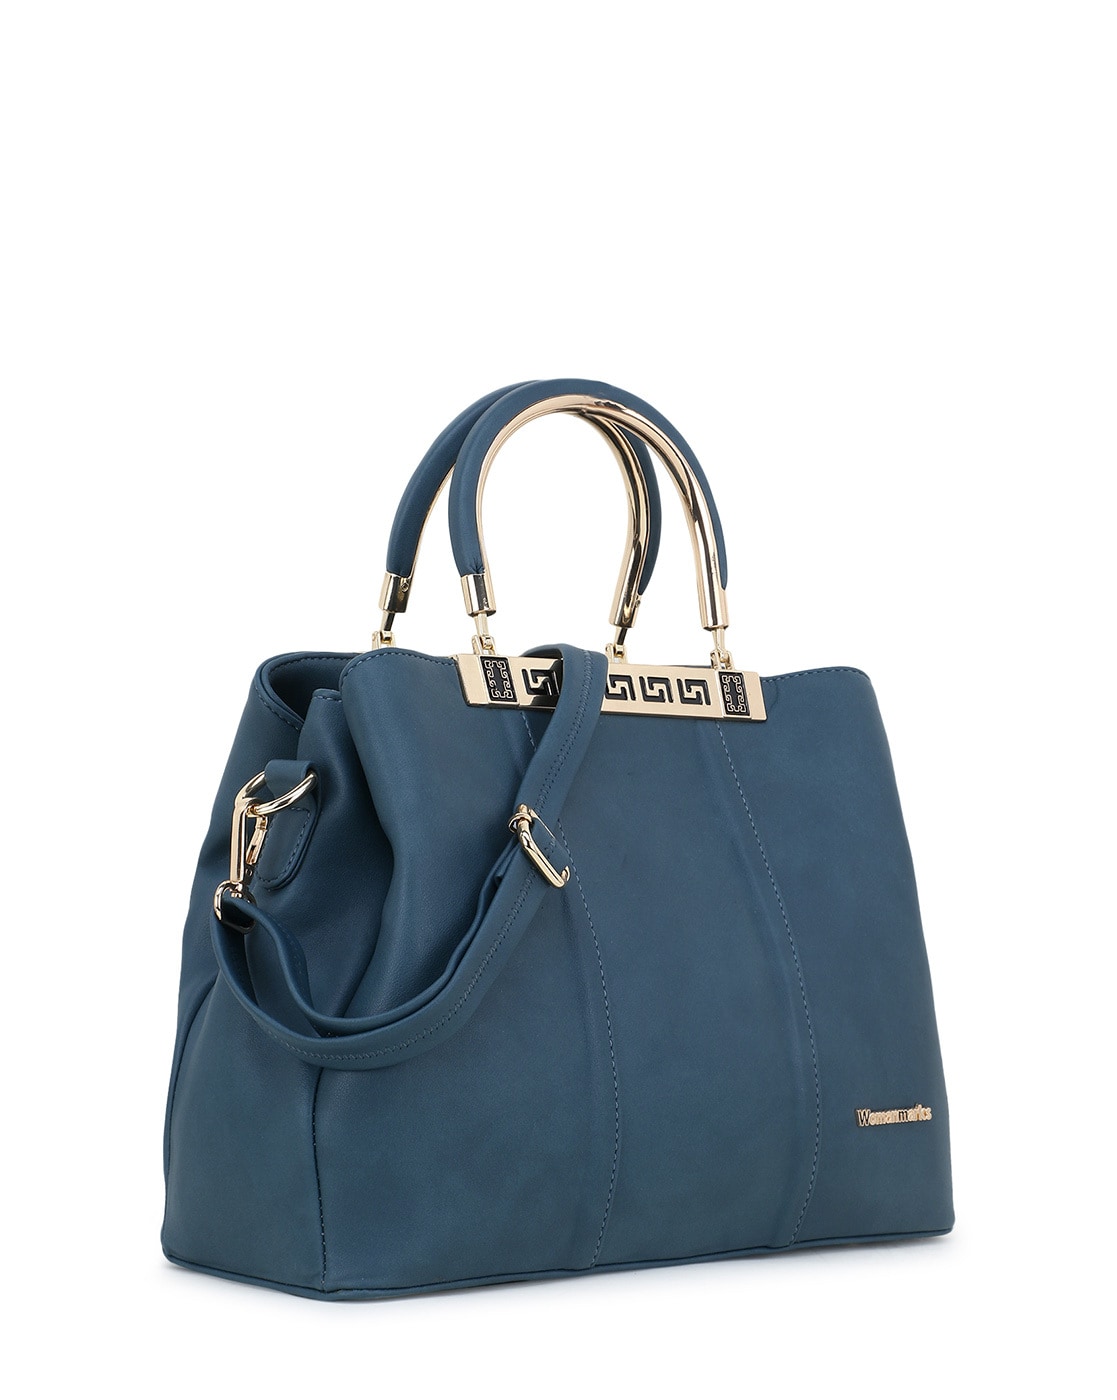 Buy Tan Handbag Online at Best Price at Global Desi- 8905134708216